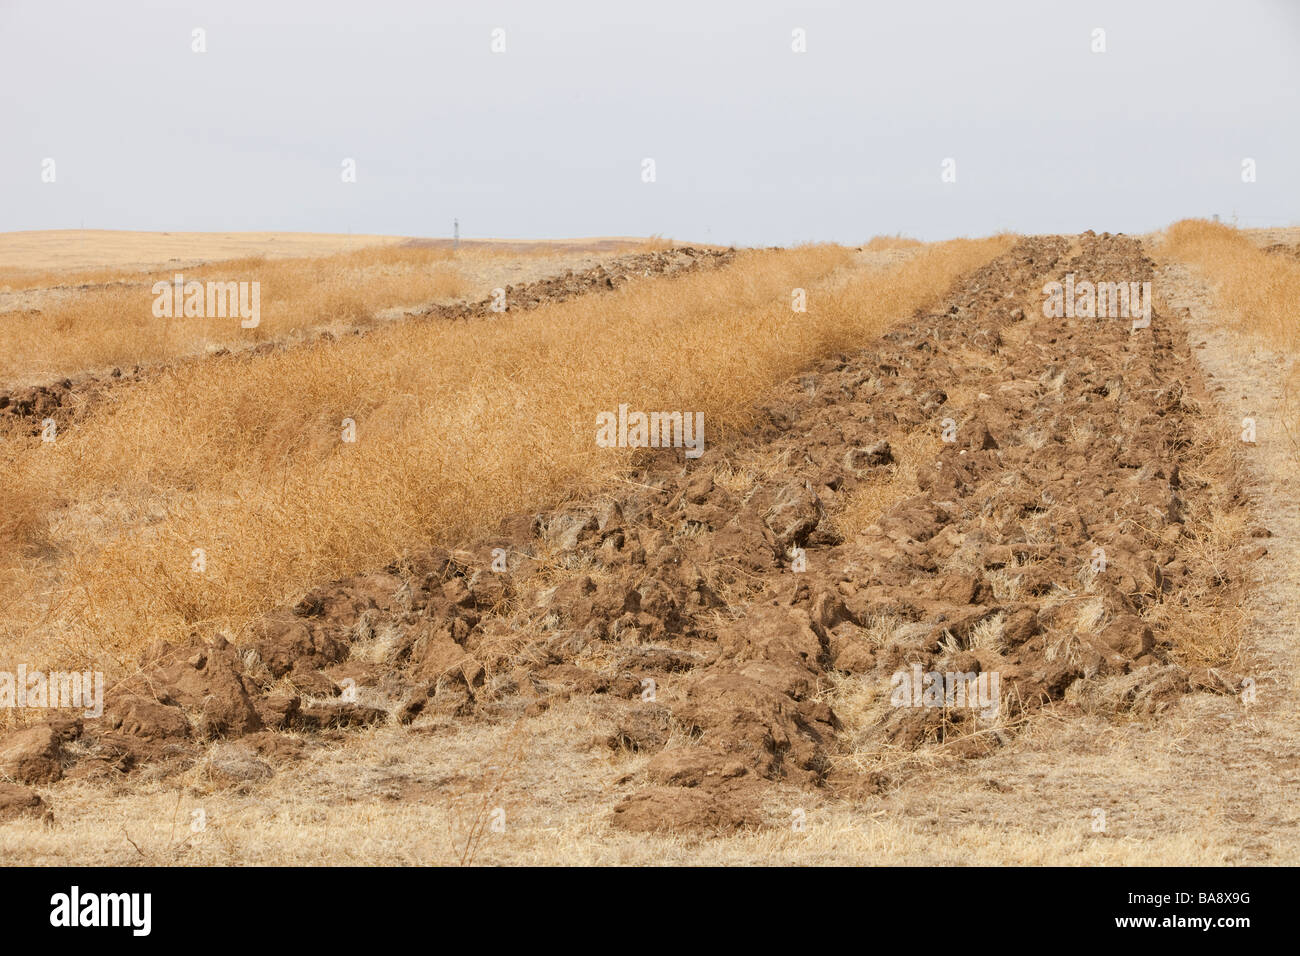 Innere Mongolei ist die schlimmste Dürre in 50 Jahren mit Wüstenbildung aufgrund des Klimawandels leiden. Stockfoto